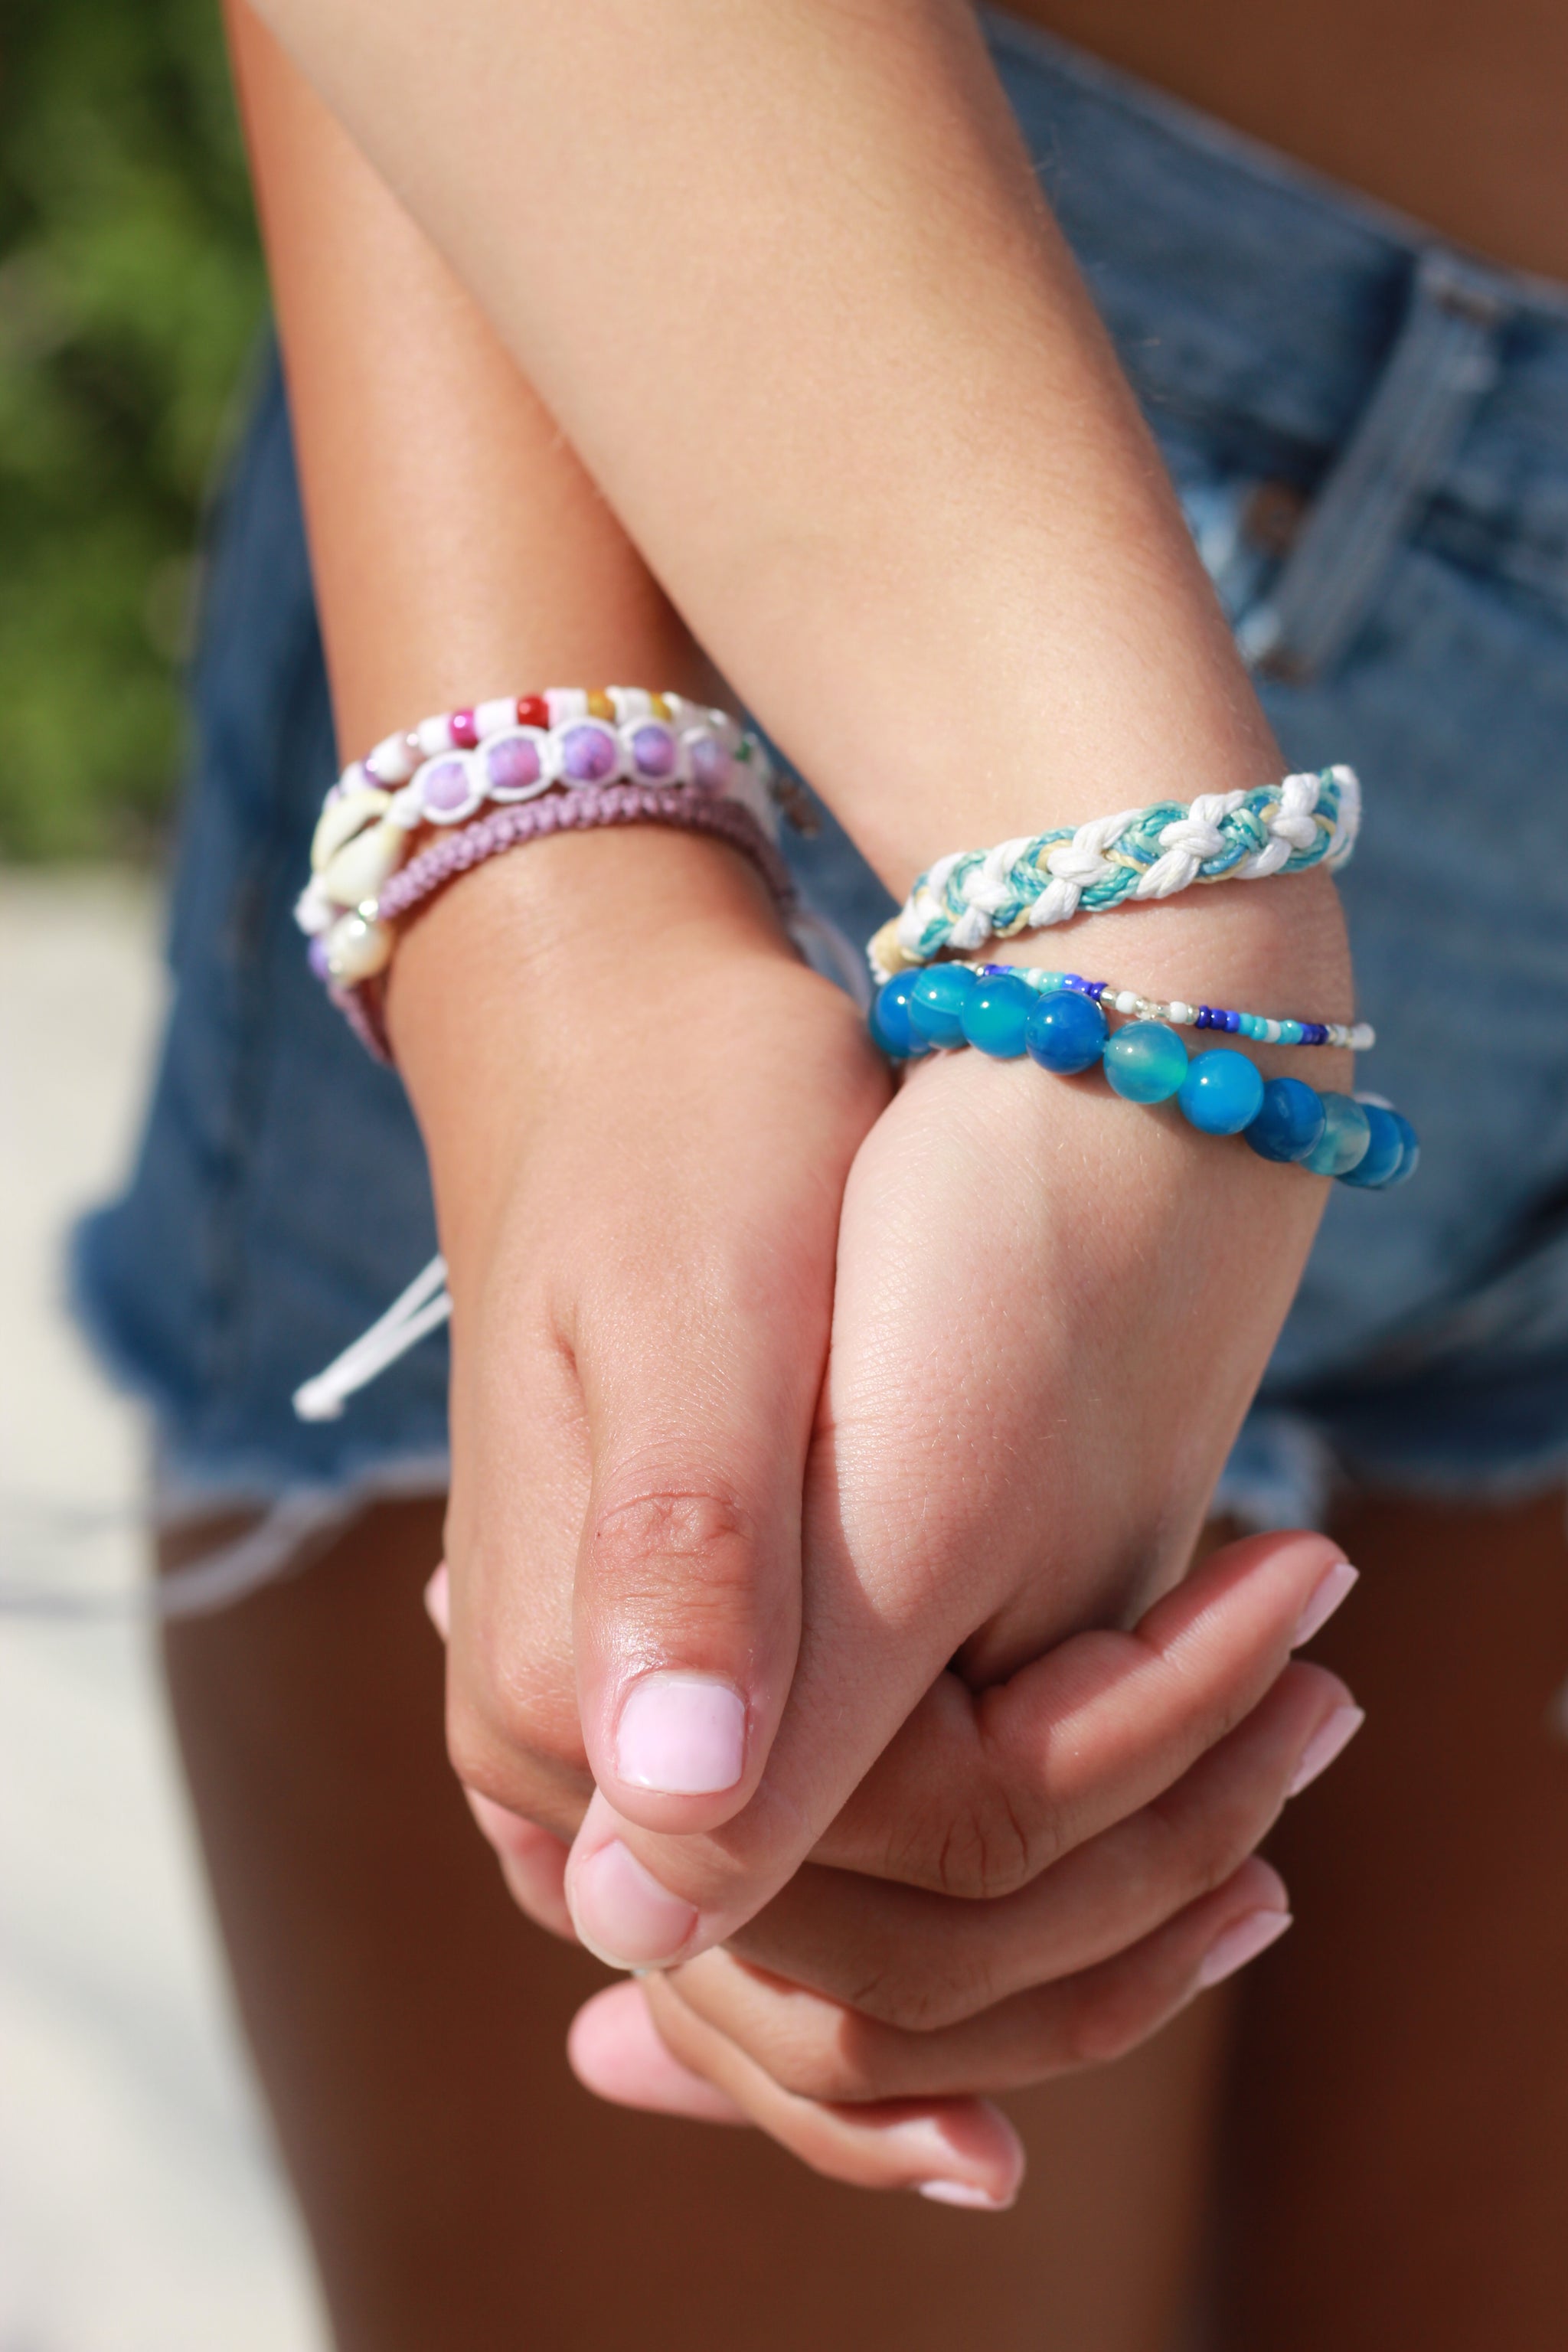 Woven Handmade Friendship Bracelet - VivaLife Jewelry